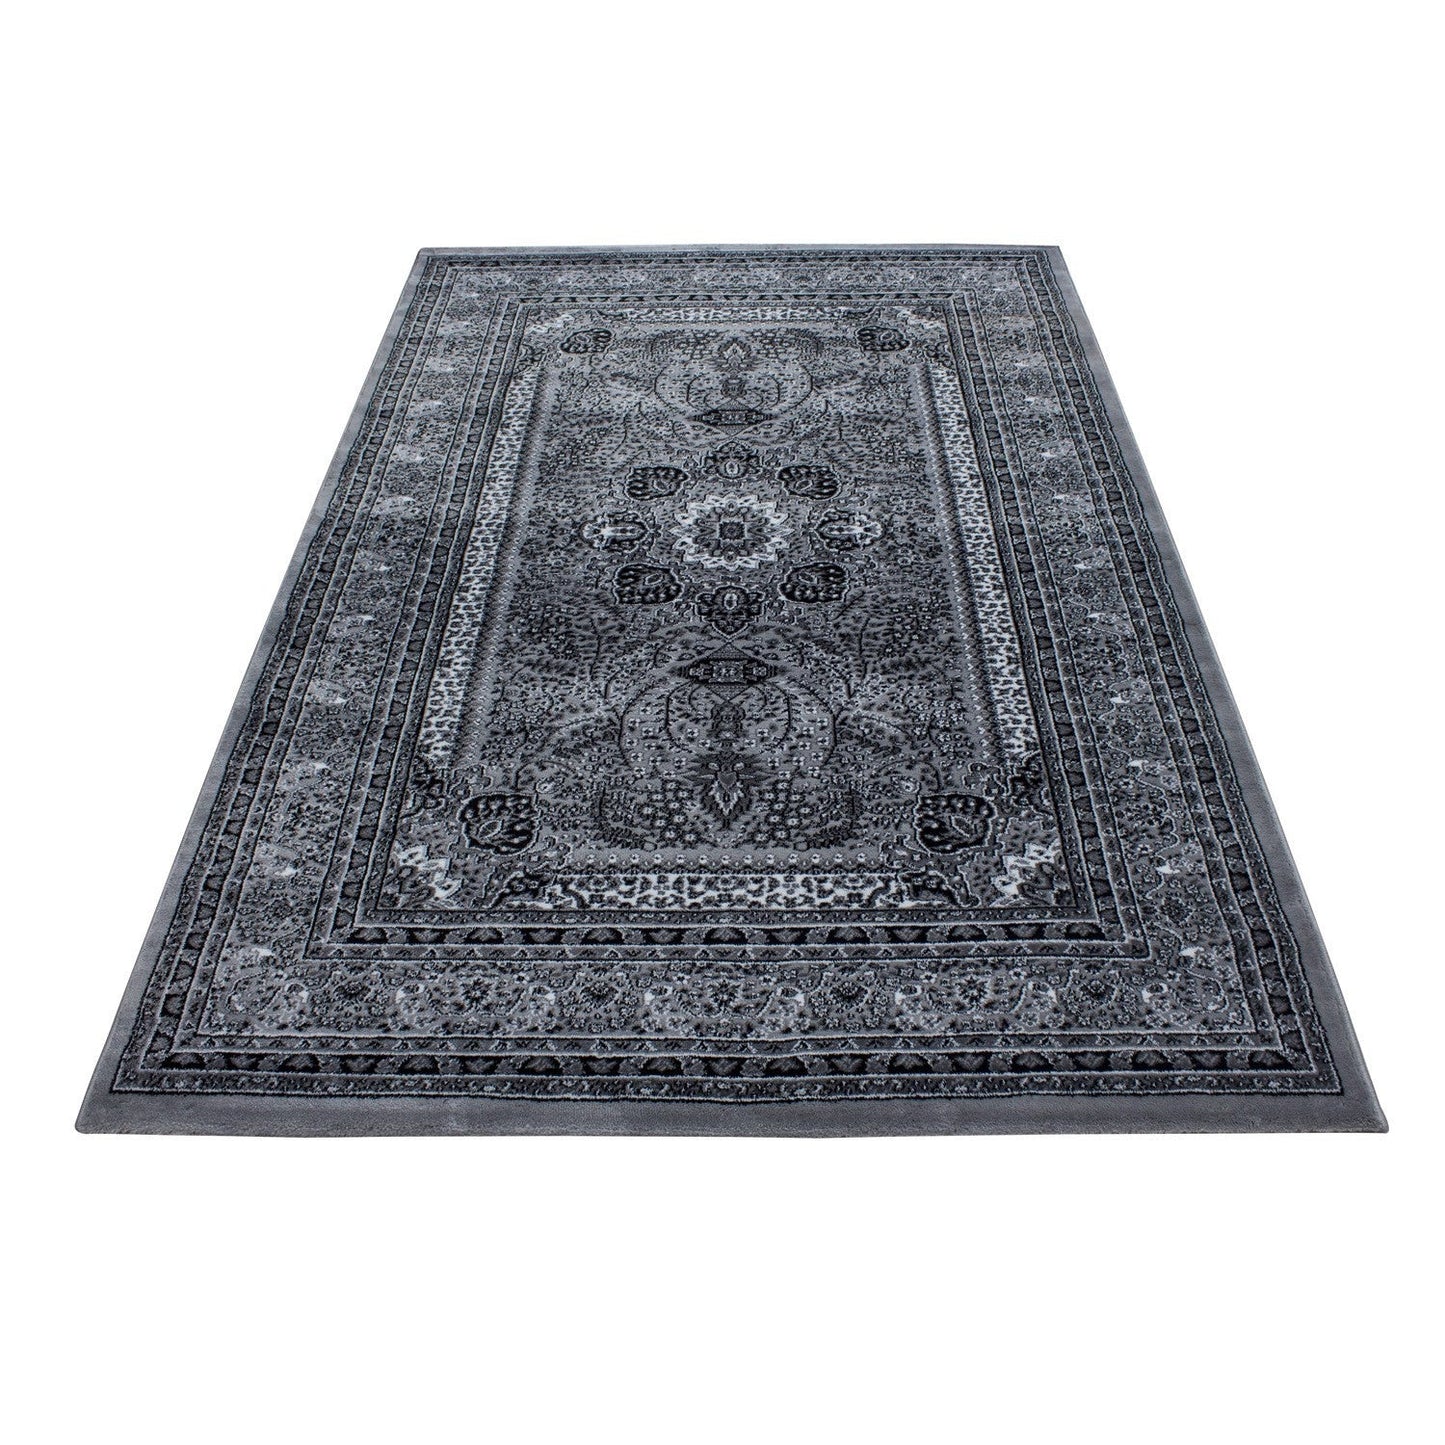 Orientteppich Klassischer Orientalisch Traditional Webteppich Schwarz Grau Weiß